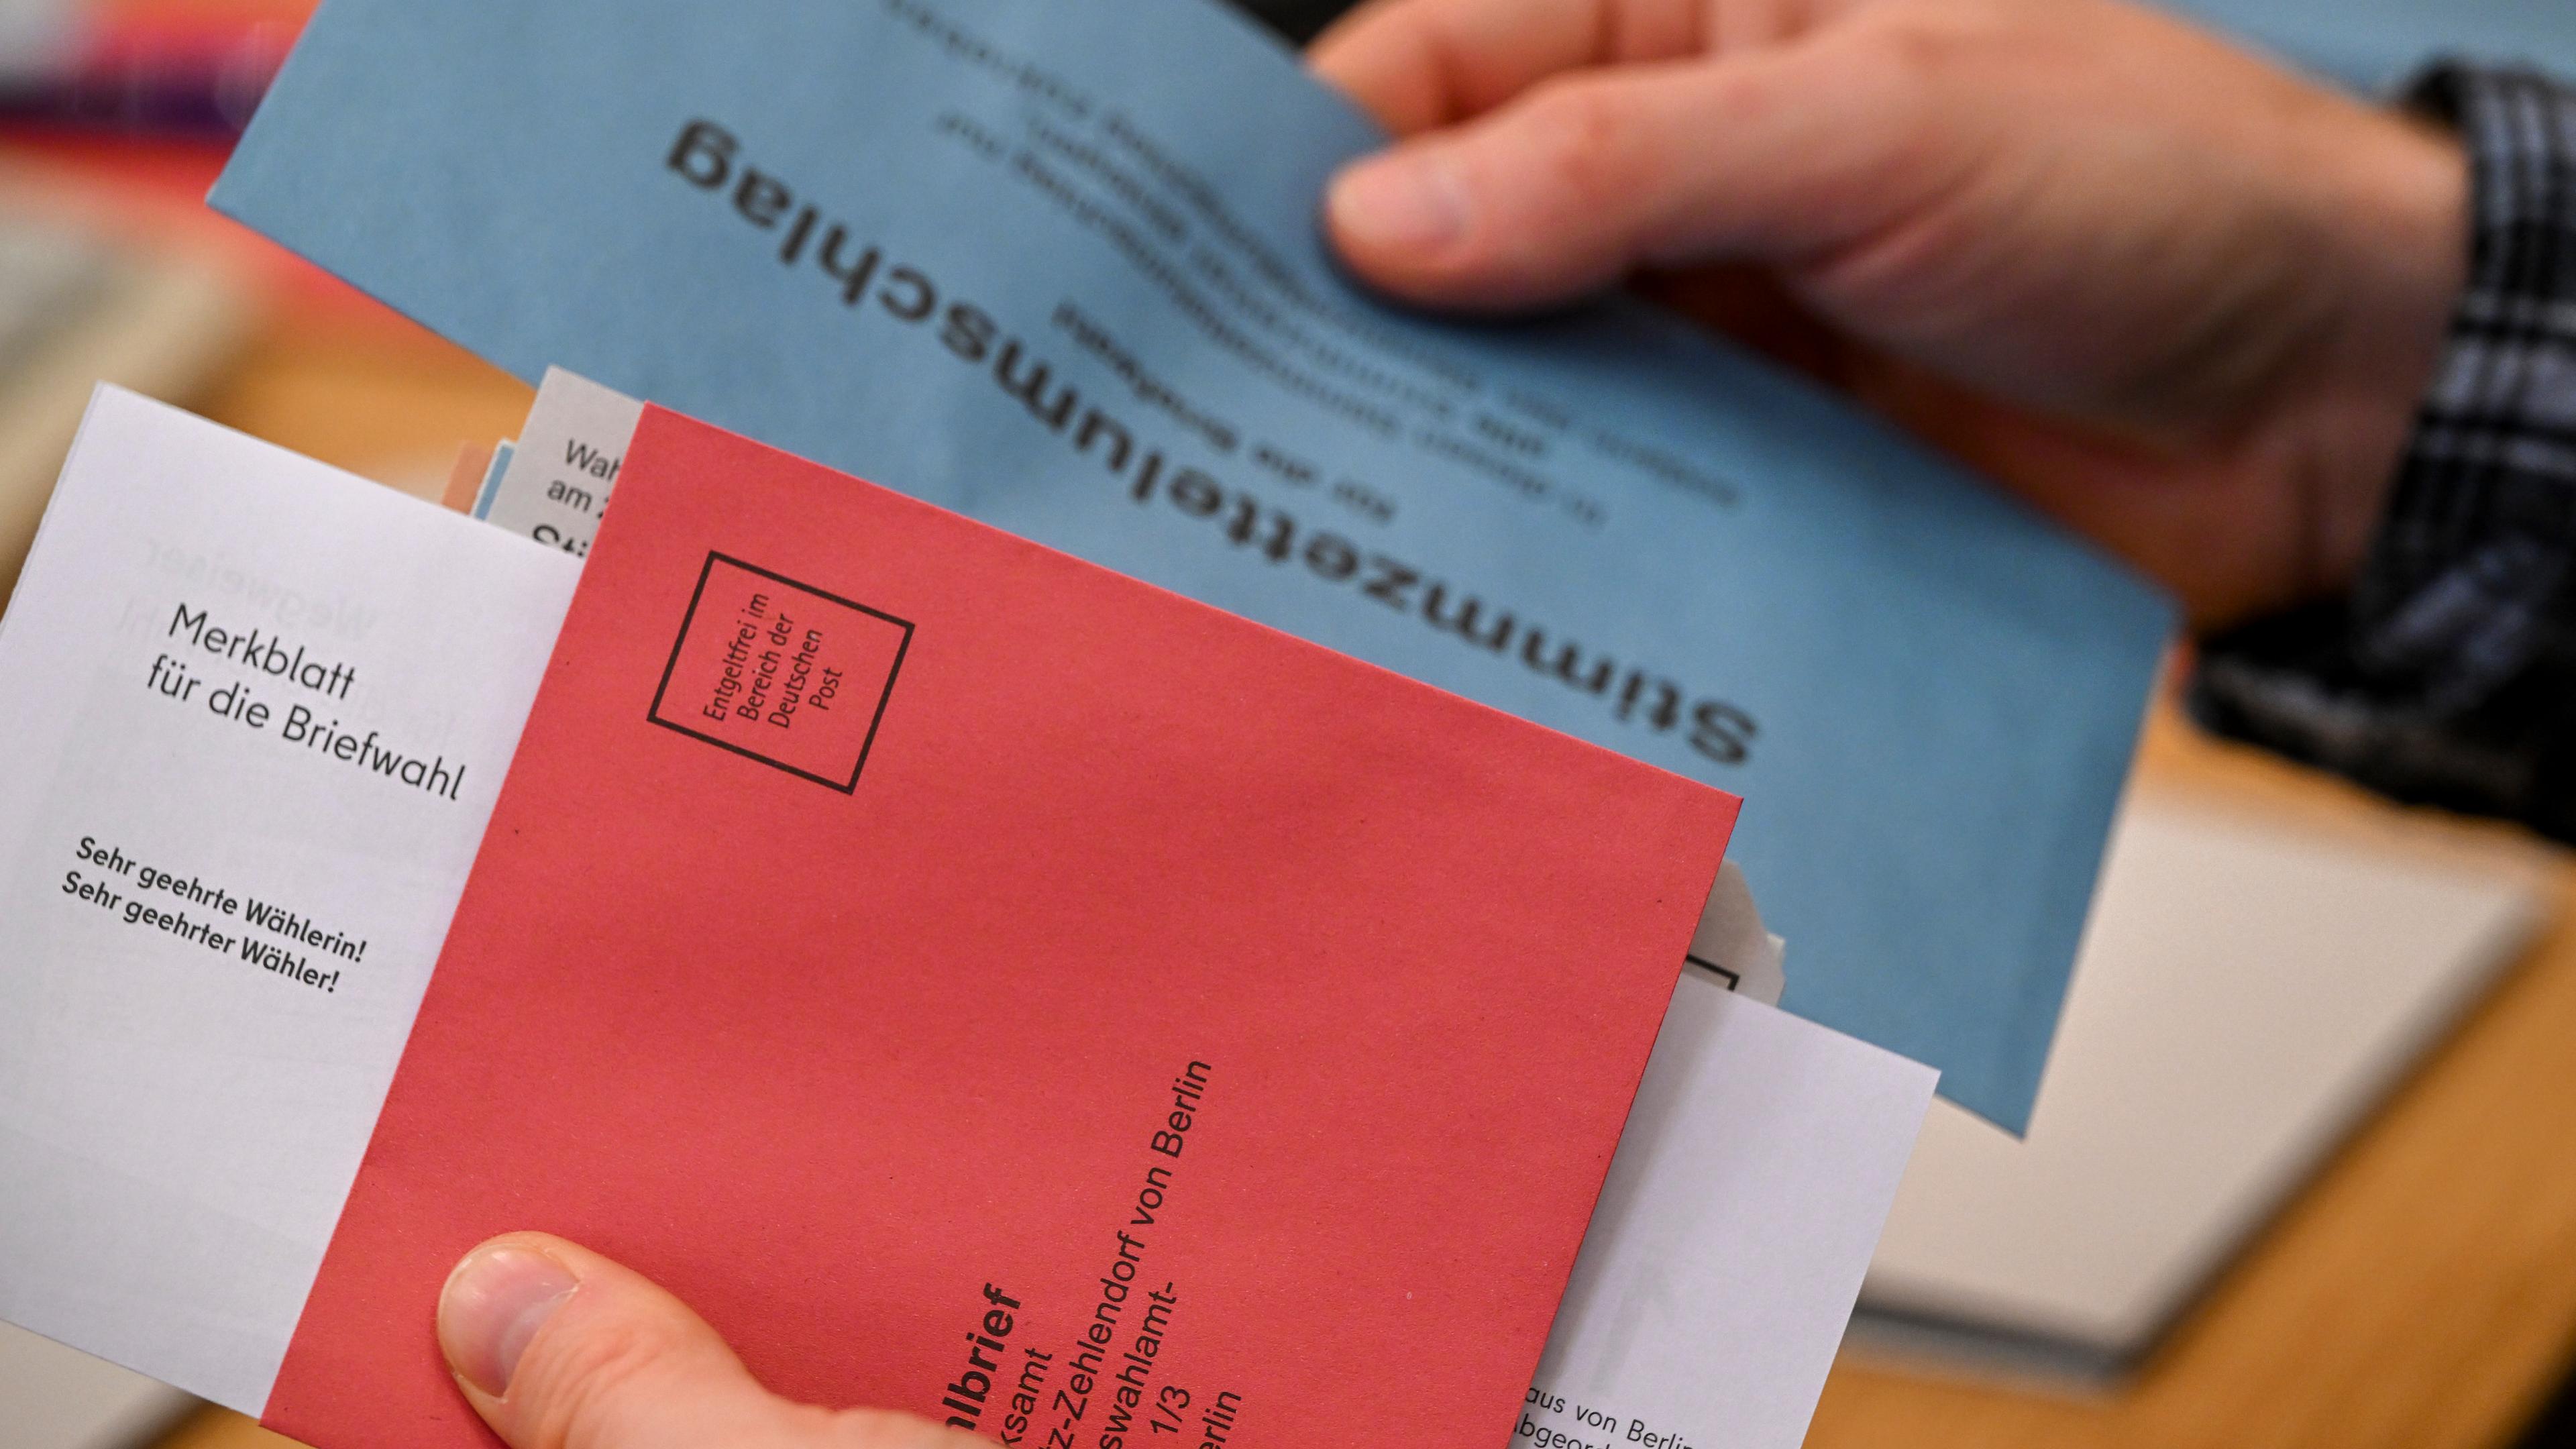 Das Bild zeigt eine Person, die Wahlunterlagen zur Briefwahl für die Wiederholungswahlen in Berlin in der Hand hält - die Wahlunterlagen wurden bei einem Pressetermin vorgestellt.